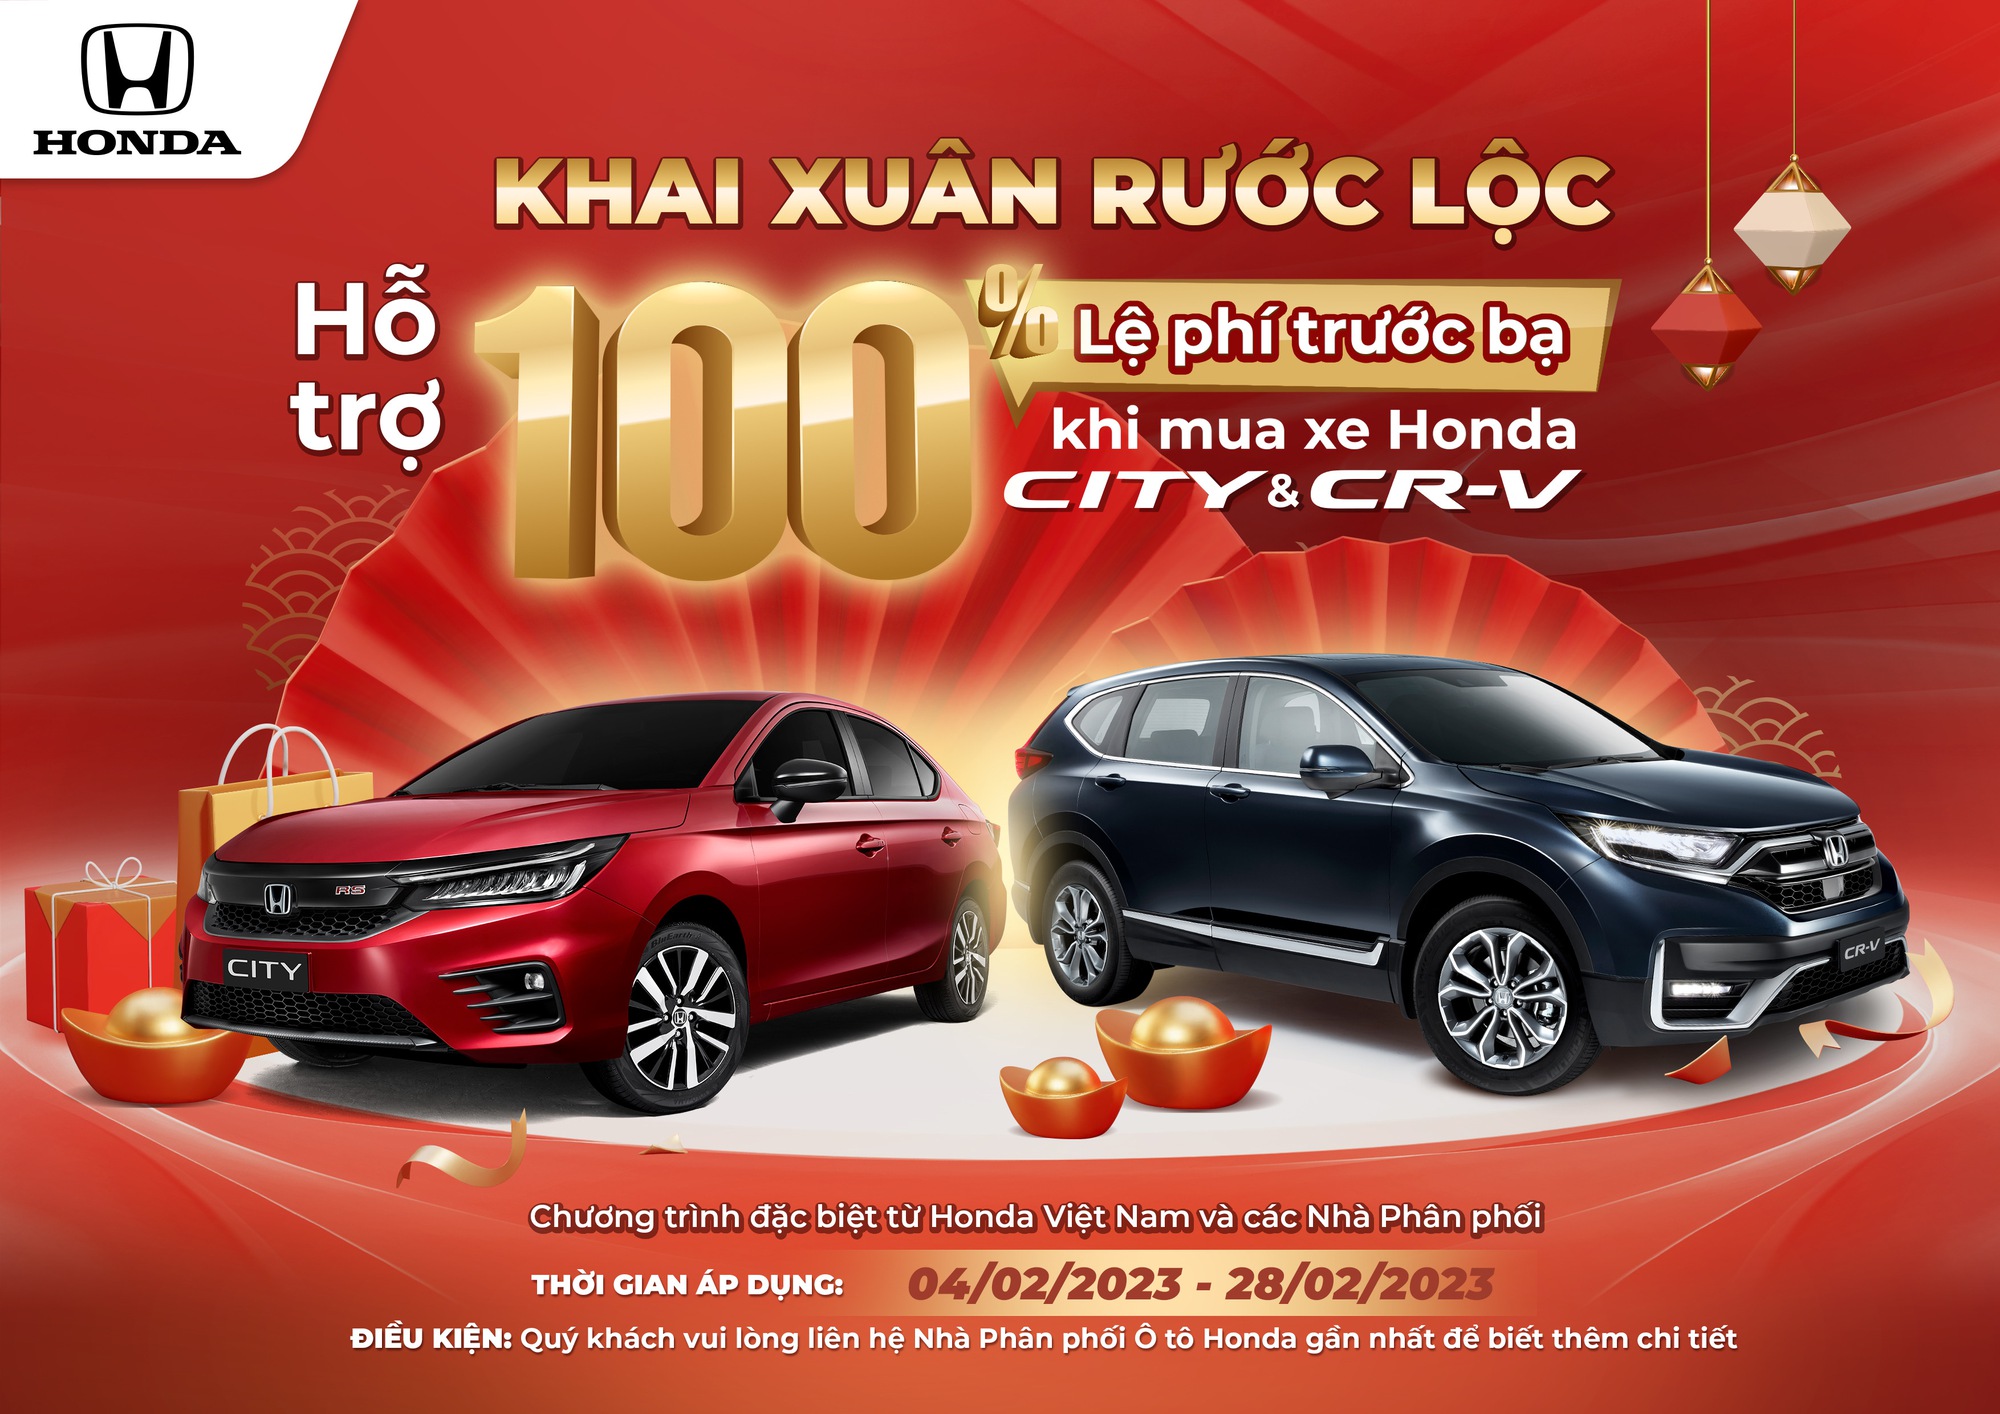 Honda Việt Nam miễn 100% trước bạ cho CR-V và City, người dùng tiết kiệm cả trăm triệu đồng - Ảnh 1.